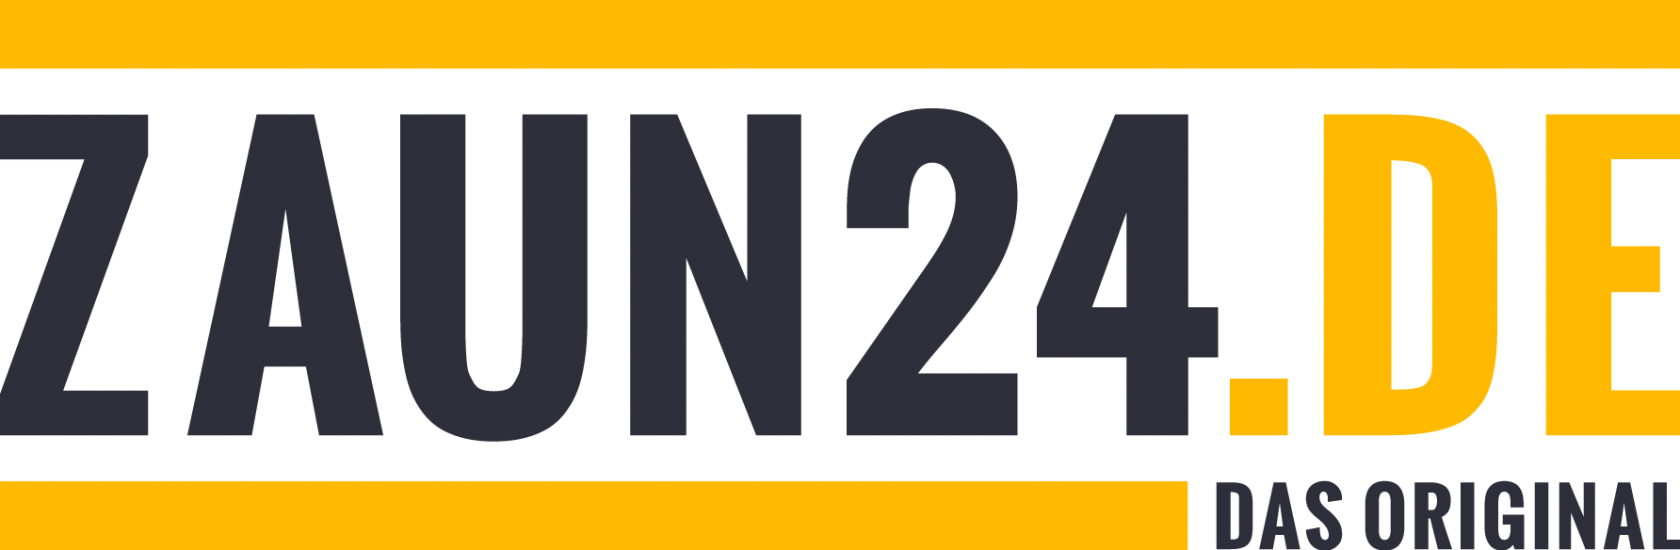 Zaun24